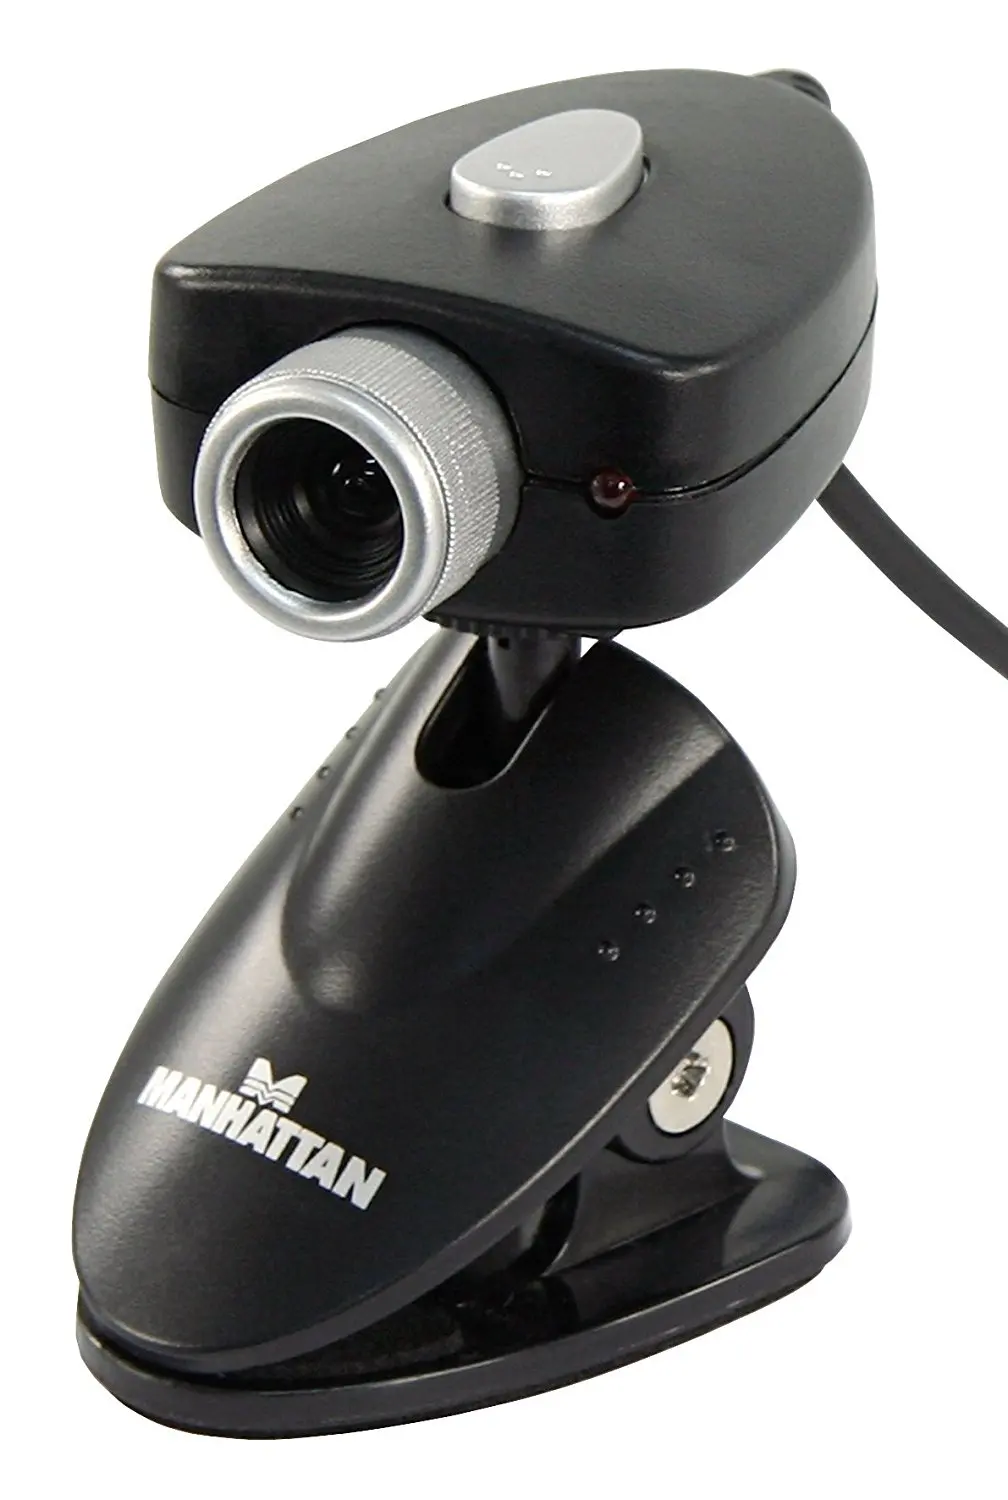 webofcam surveillance ip cam